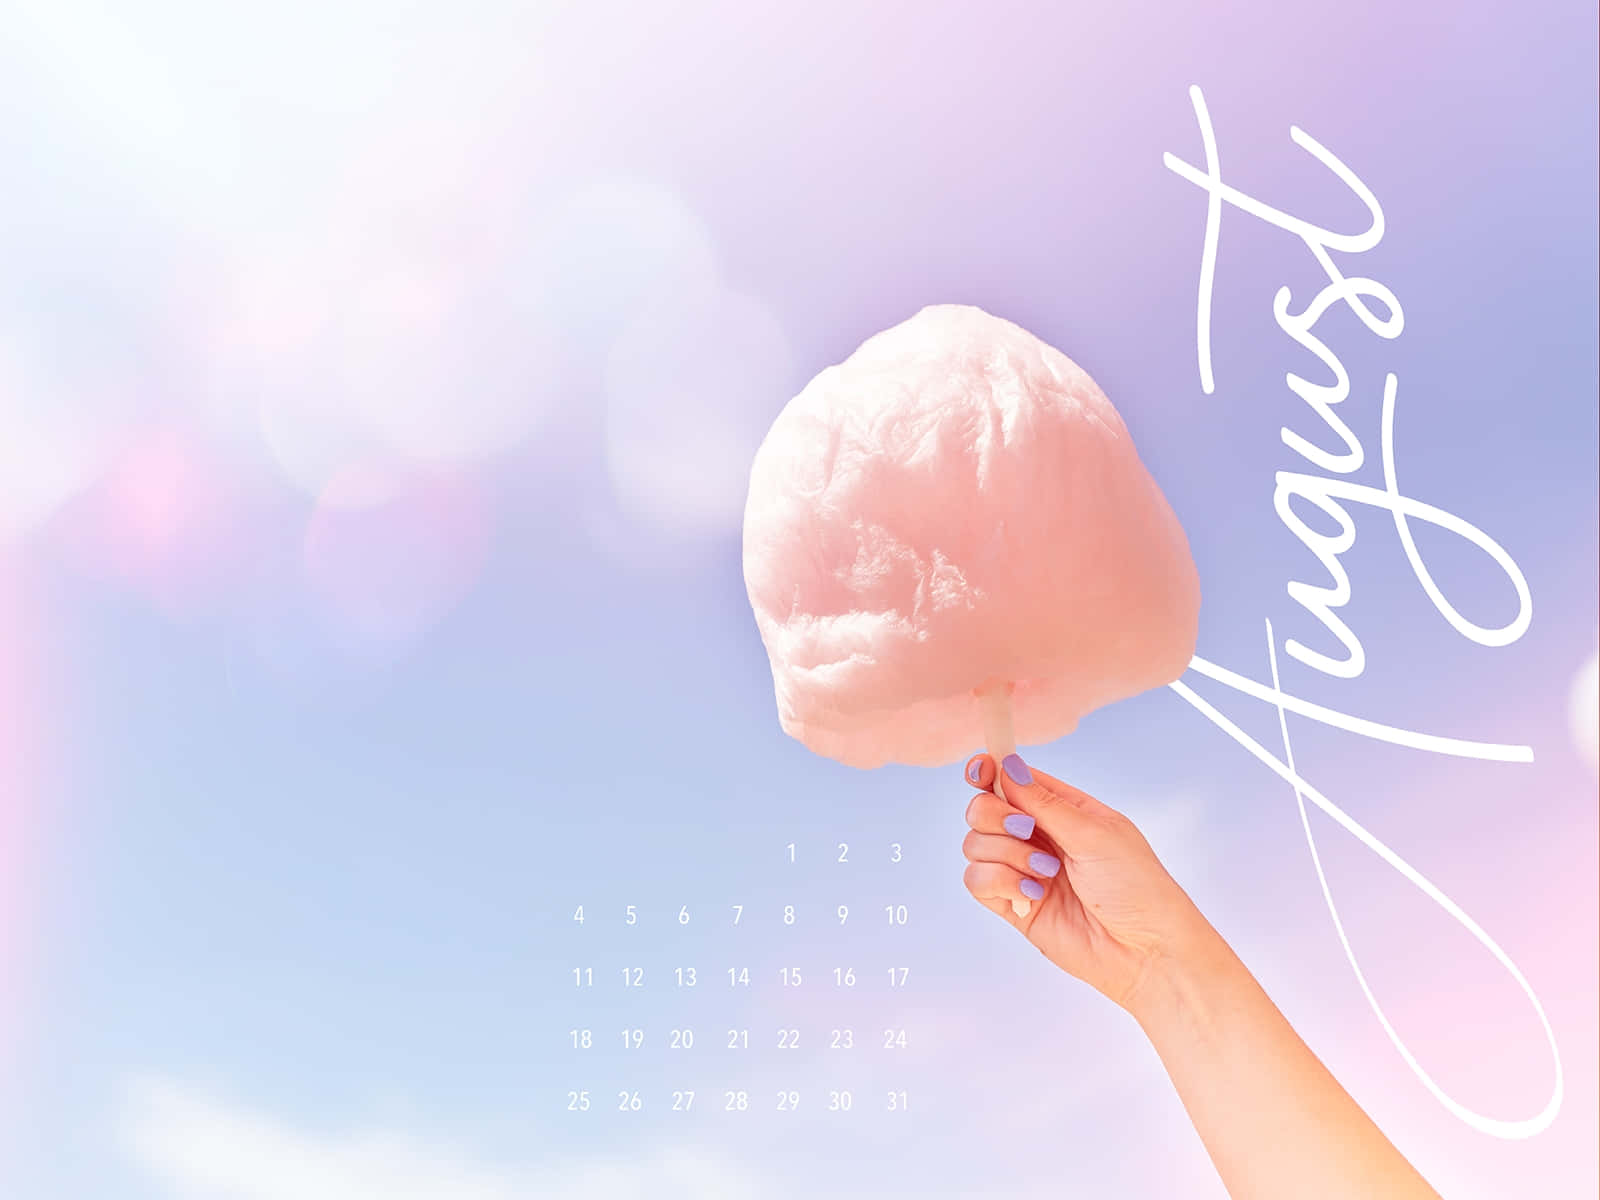 August Cotton Candy Calendar Background Wallpaper